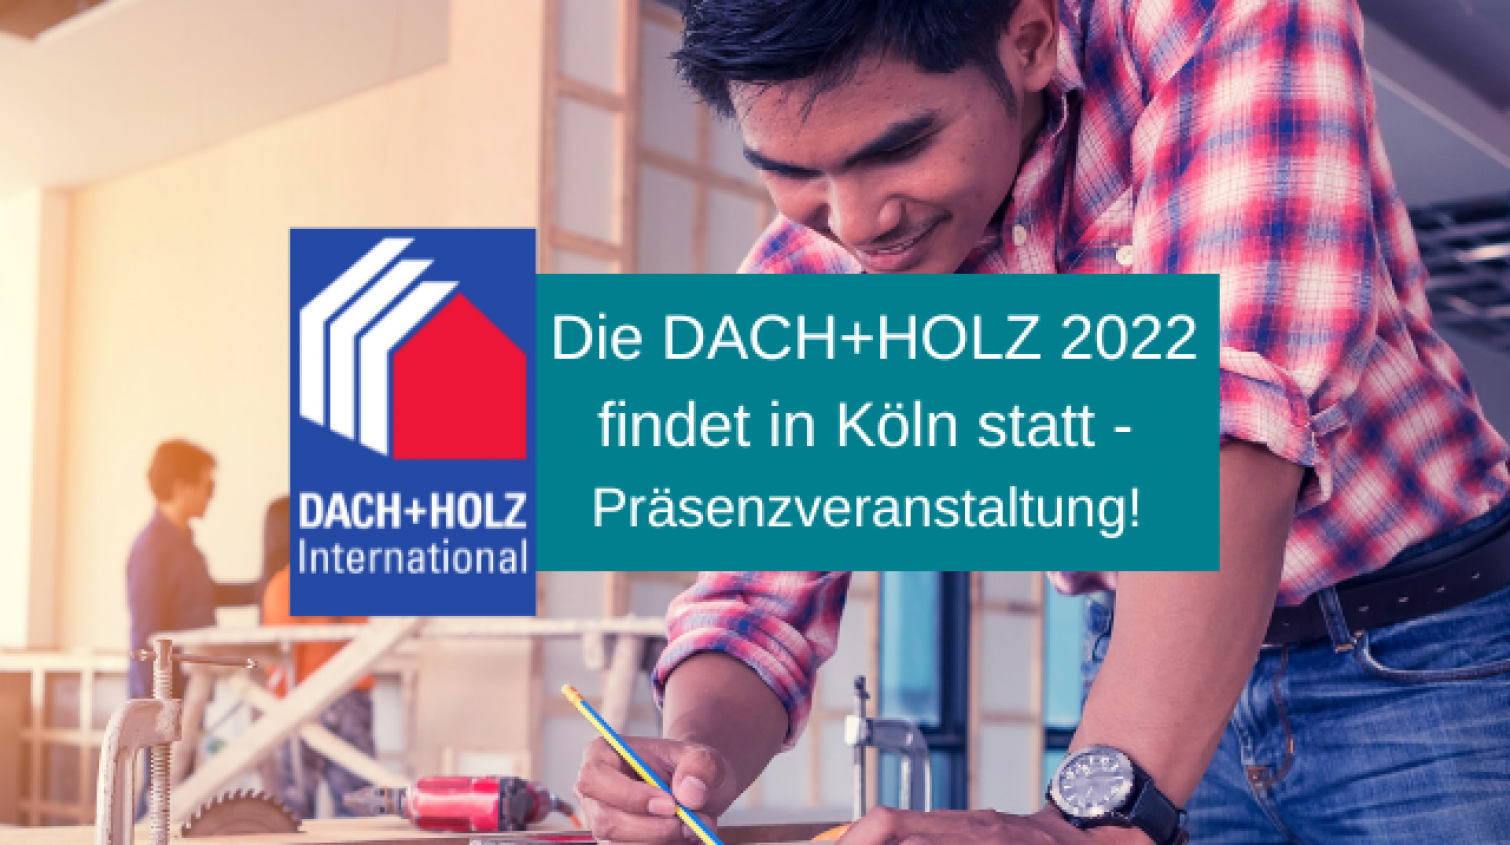 DACH+HOLZ 2022 in Köln